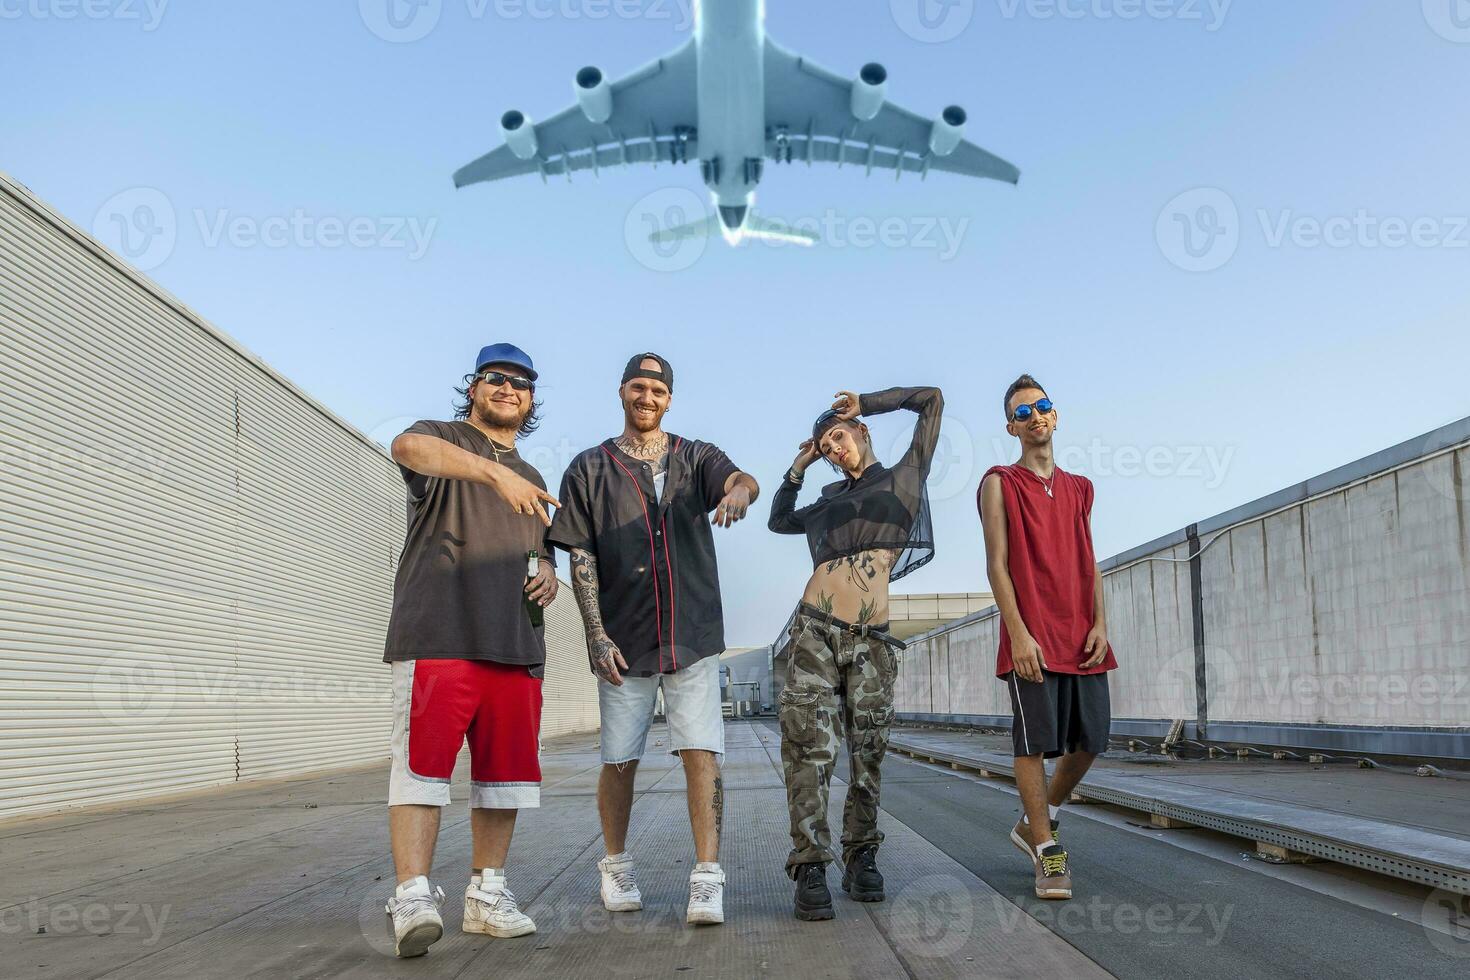 grupo do rappers posando em a metal telhados do a abandonado construção enquanto uma avião moscas a sobrecarga foto